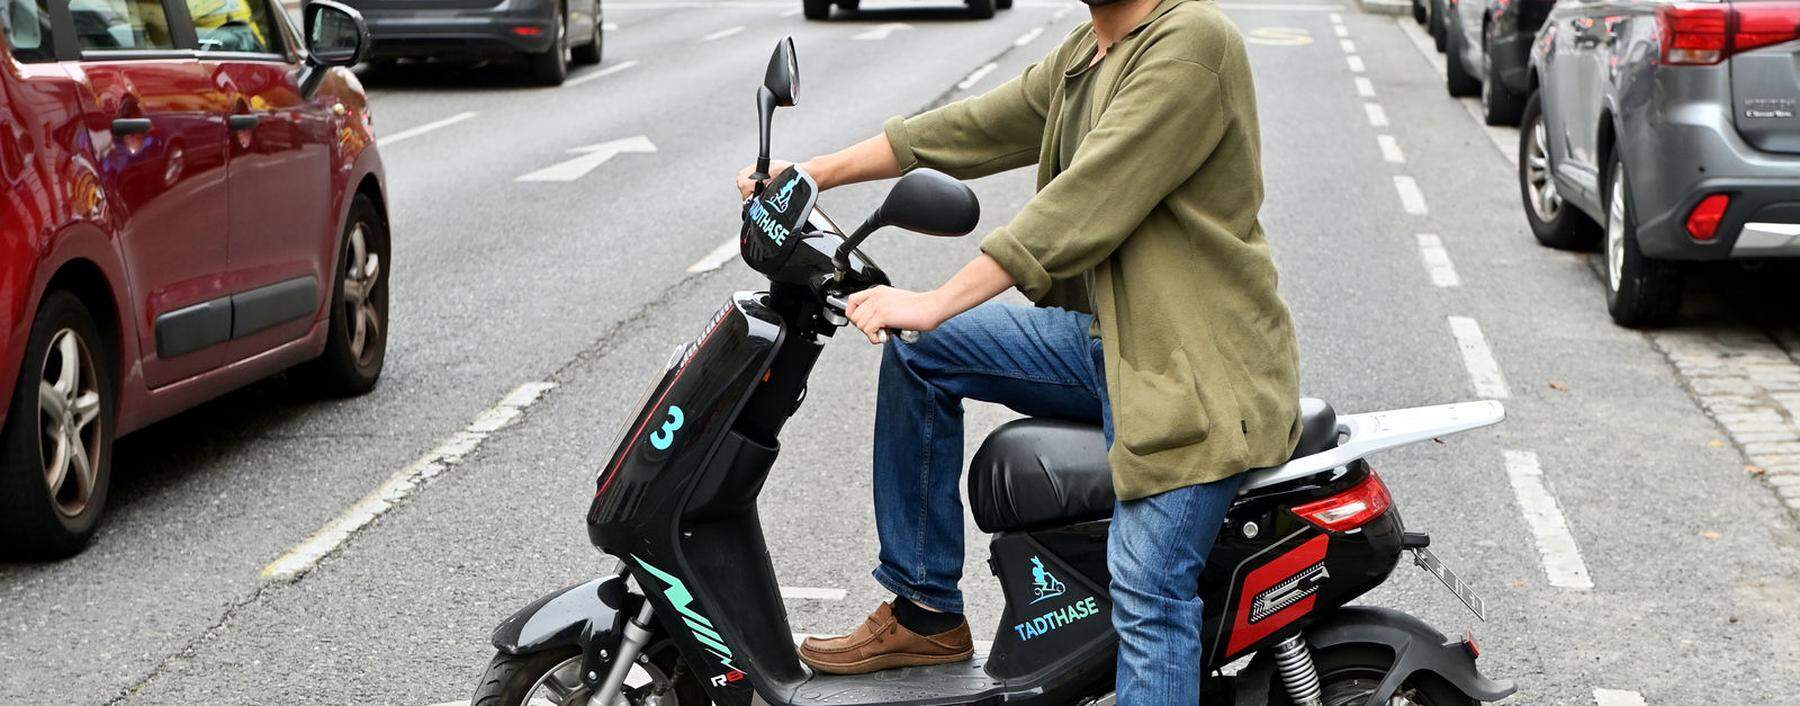 Hamed Ahmadipouri verkauft die mopedähnlichen E-Bikes vor allem an Lieferservice-Fahrer, die damit leichter arbeiten können. 